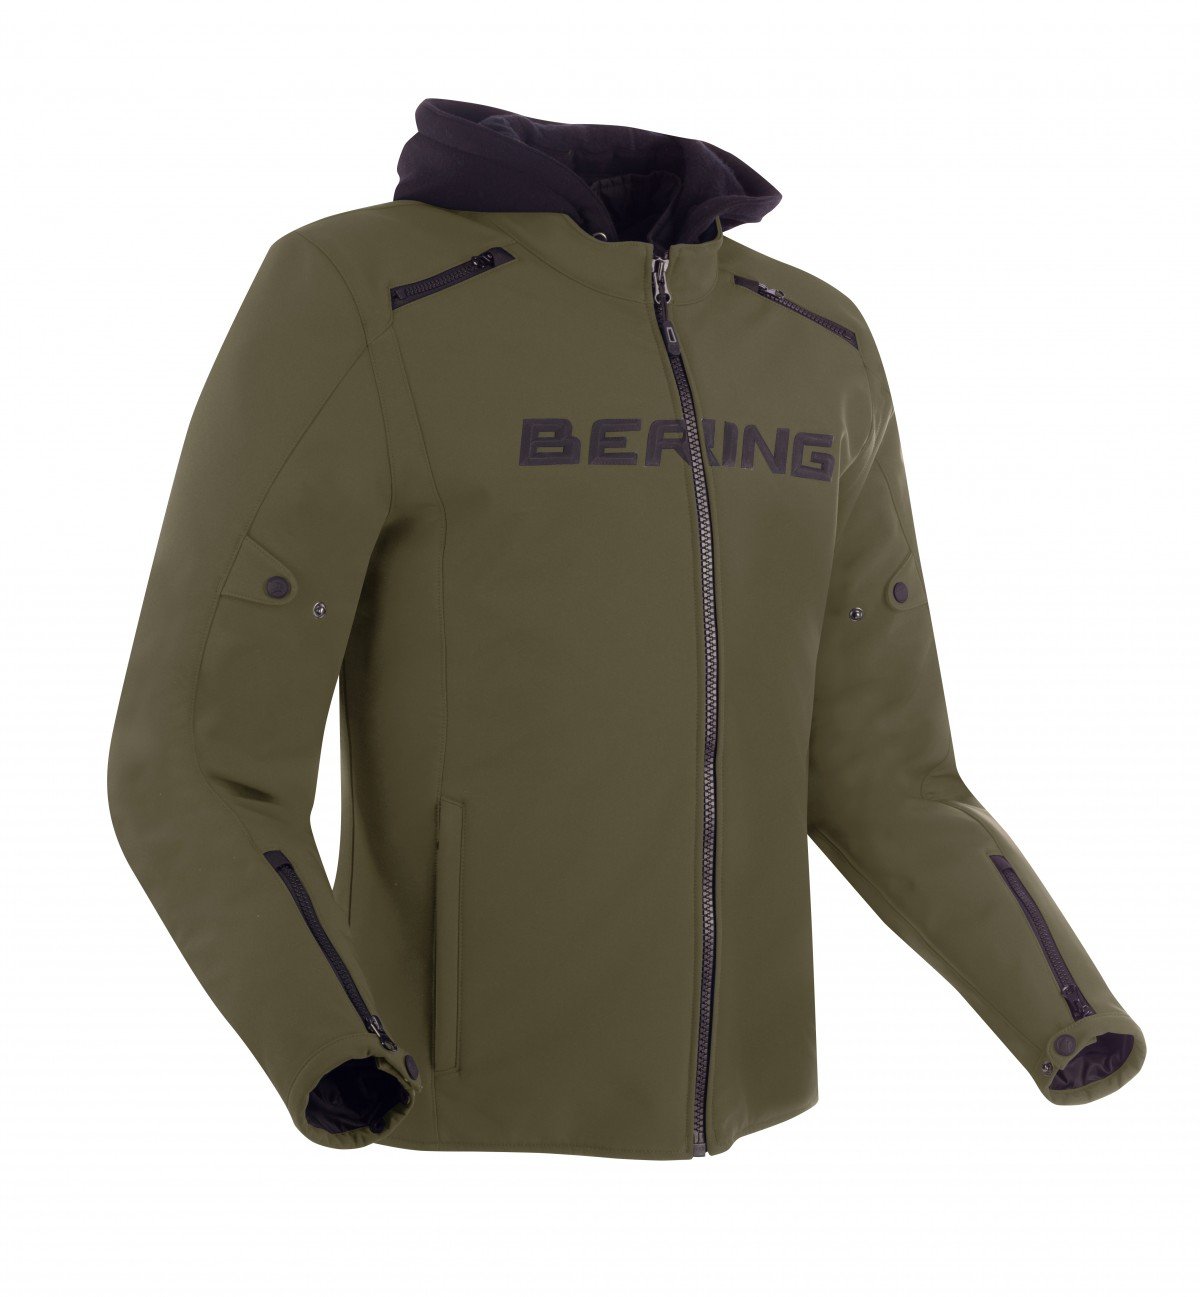 Image of Bering Elite Jacket Khaki Size S ID 3660815170328